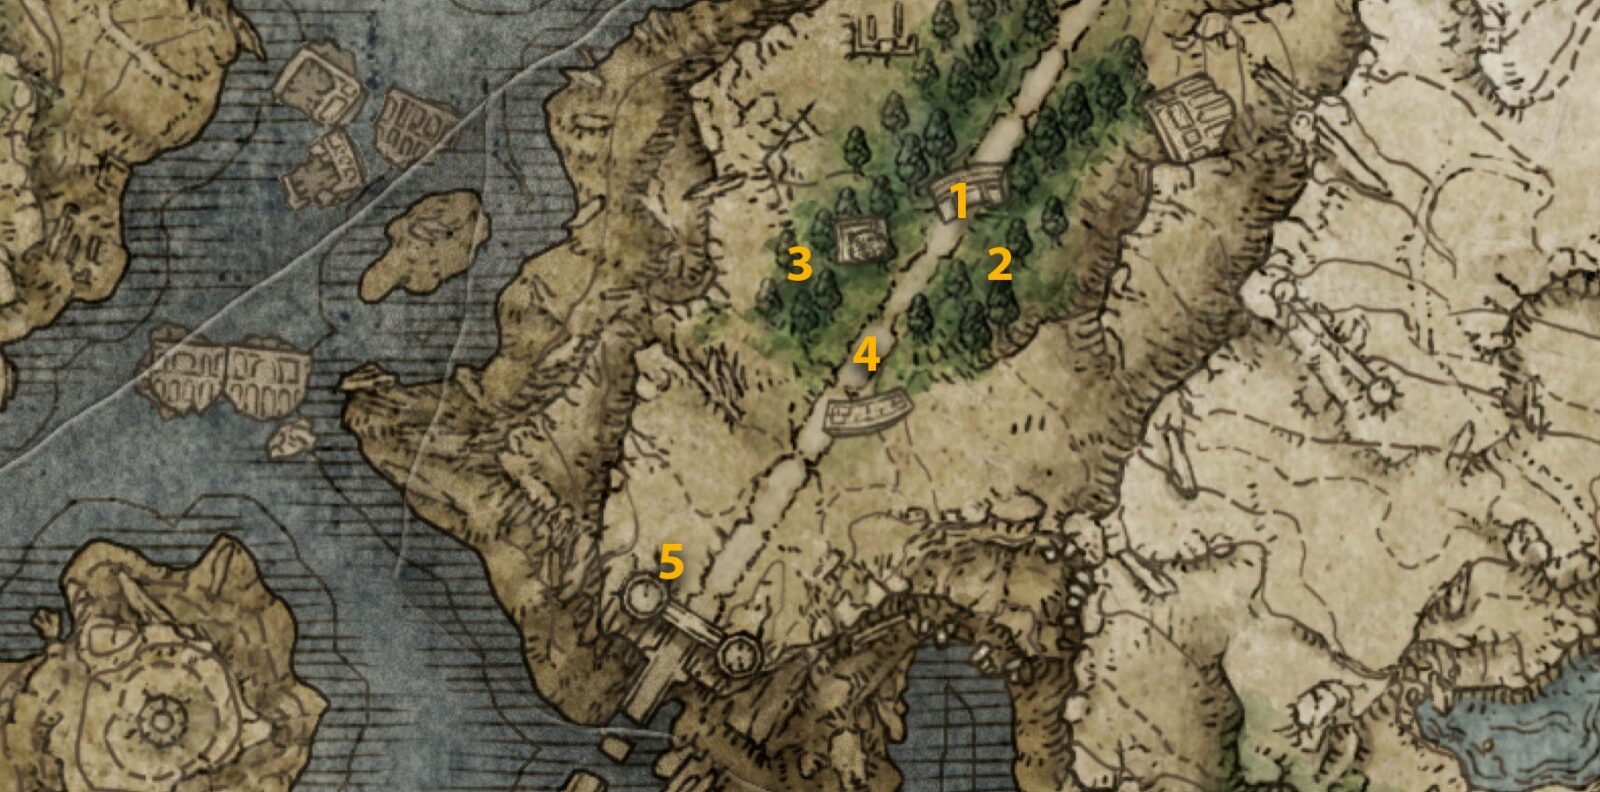 Cuckoo Knight map locations in Elden Ring